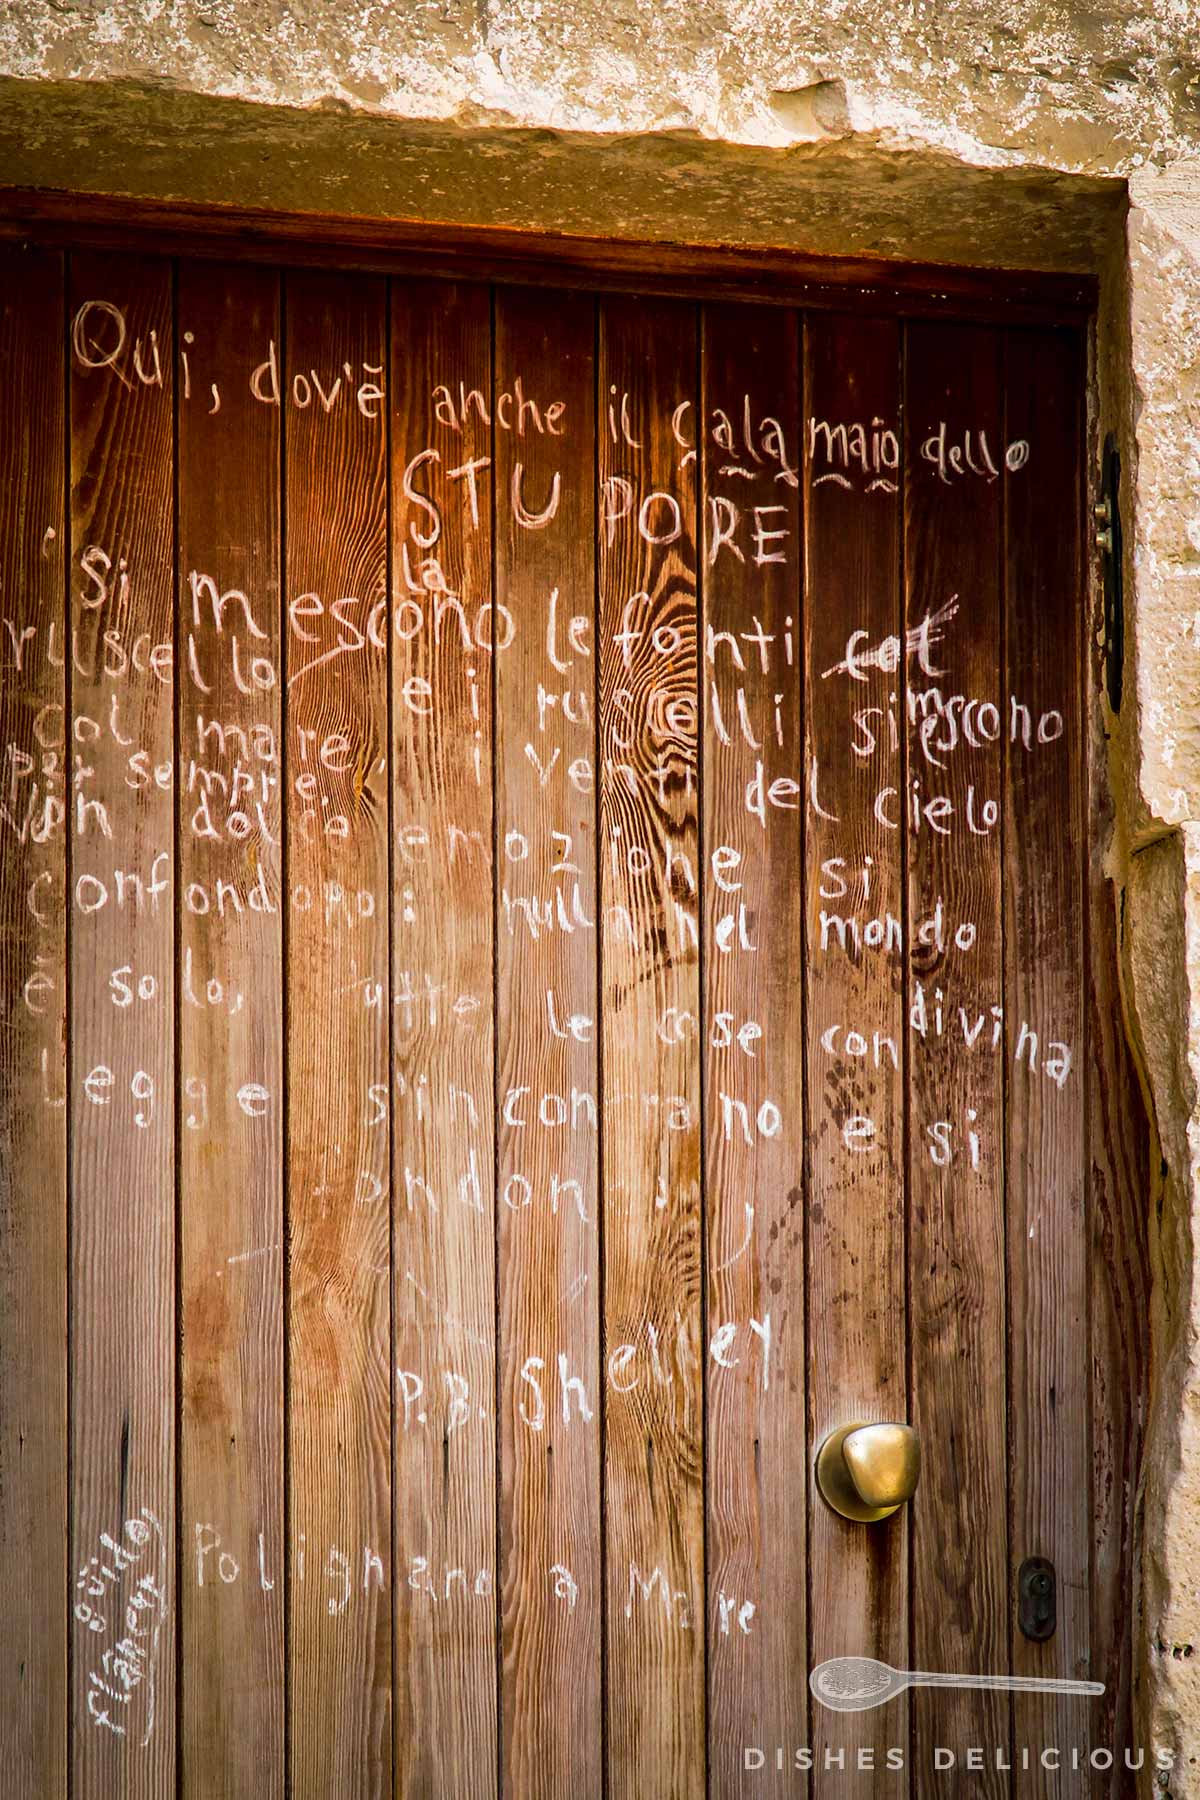 Ein handgeschriebenes Gedicht an einer Holztür.